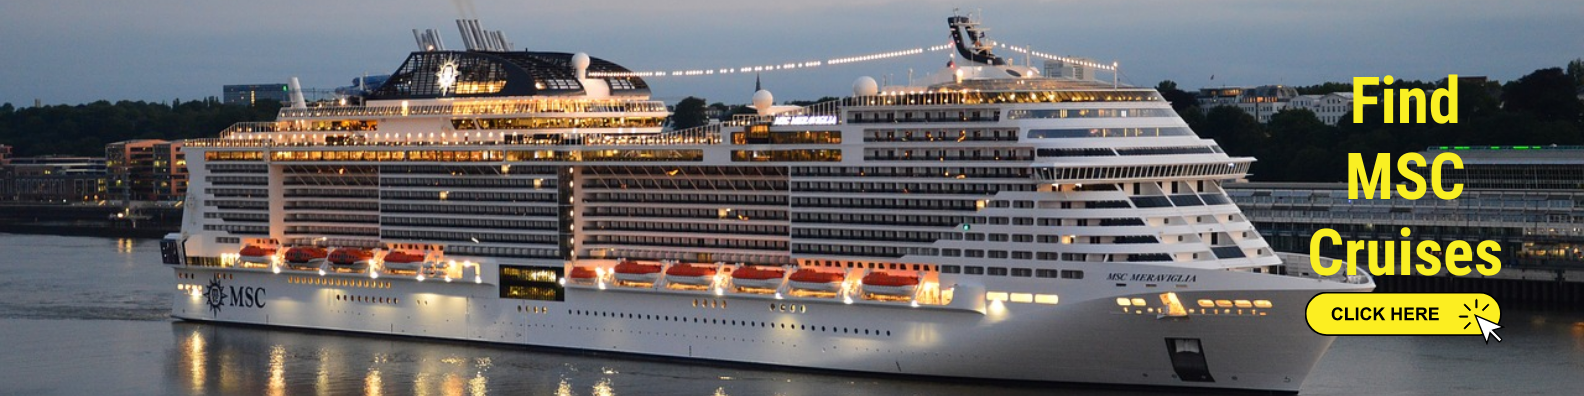 Find MSC Cruises Meraviglia